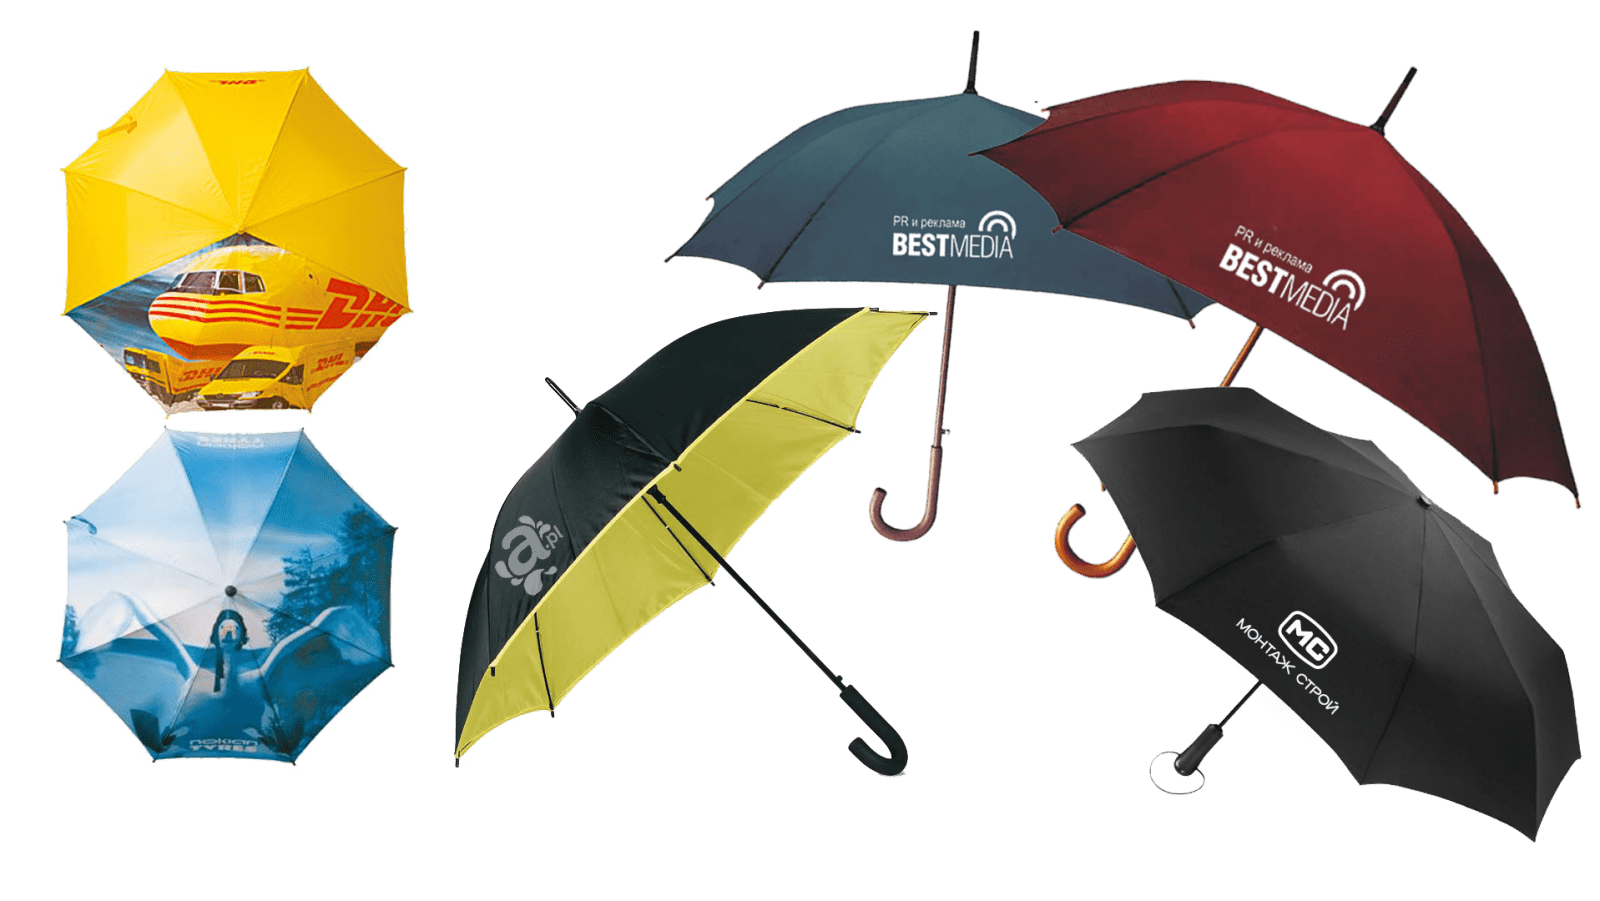 Зонты и сумки с логотипом - отличная реклама